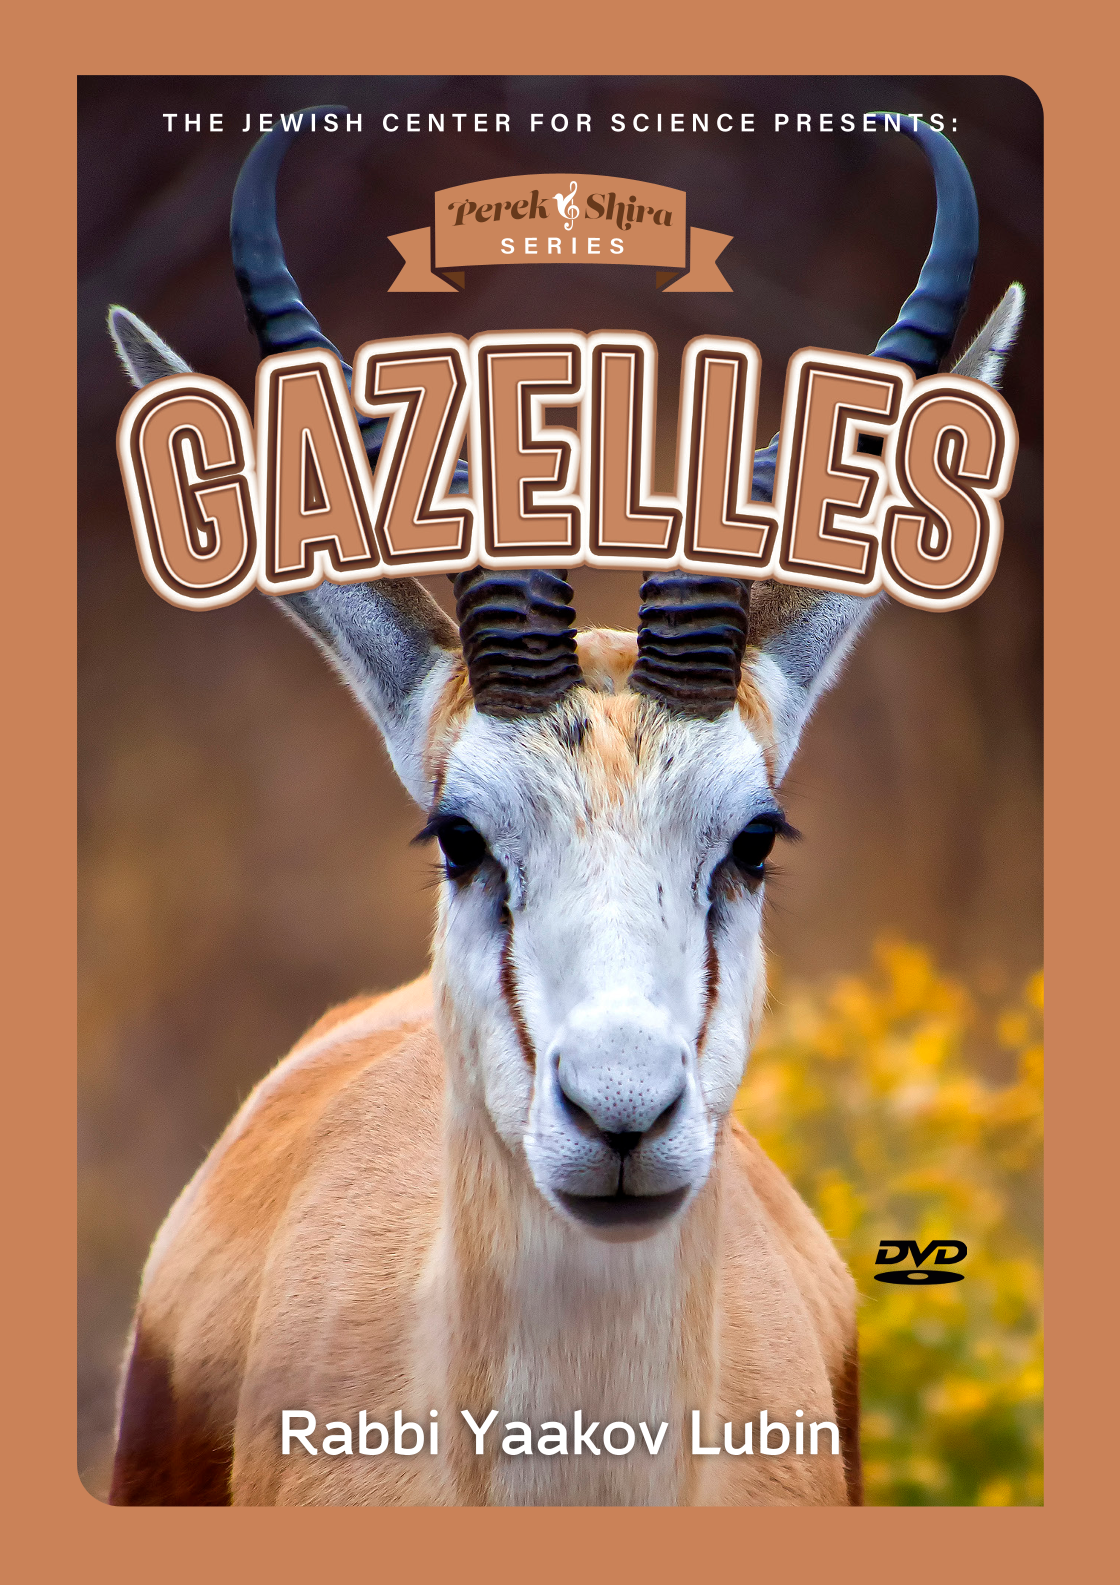 Perek Shira Series - Gazelles (Video)